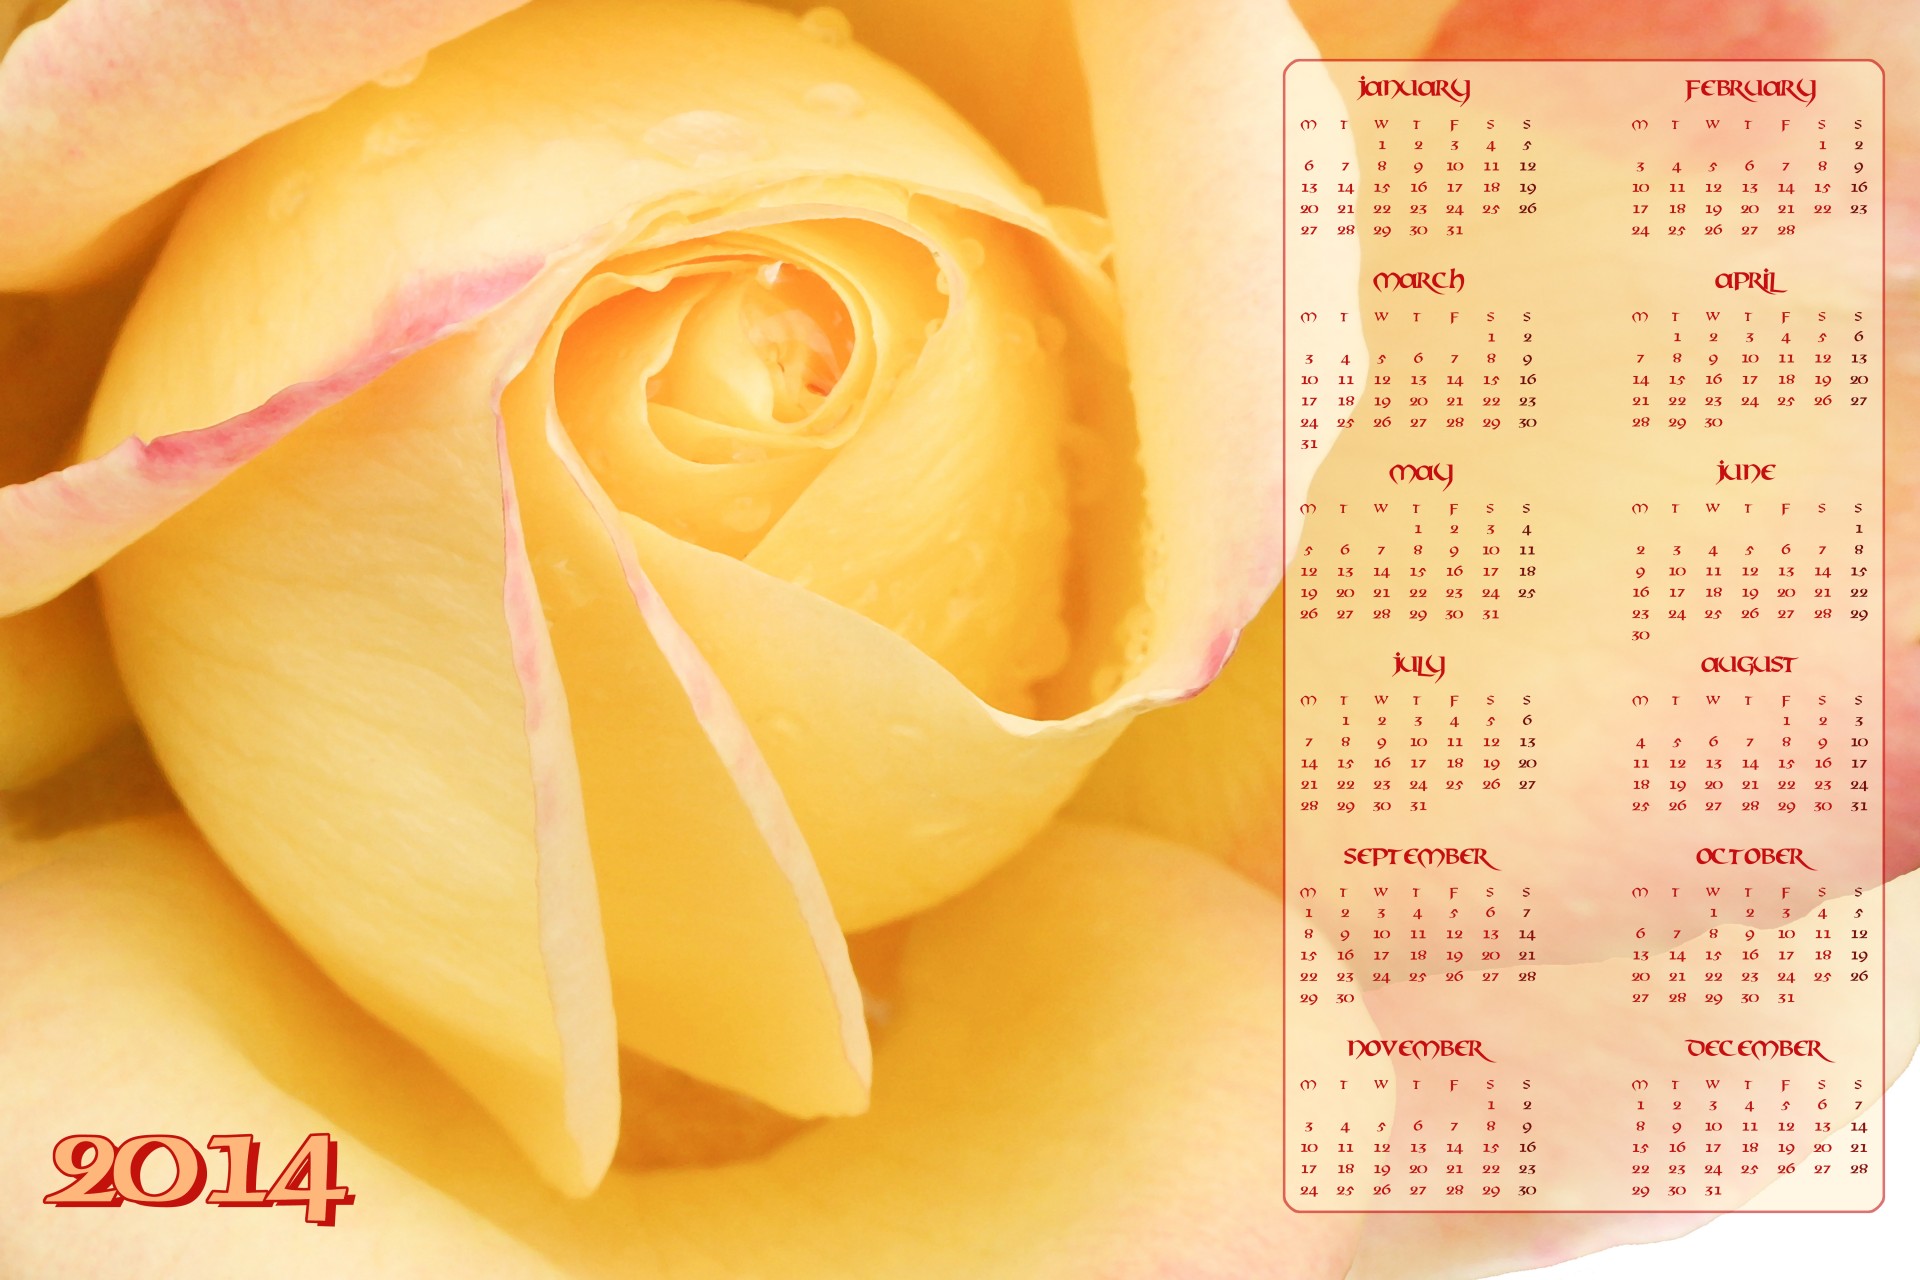 2014 calendar 2014 calendar free photo